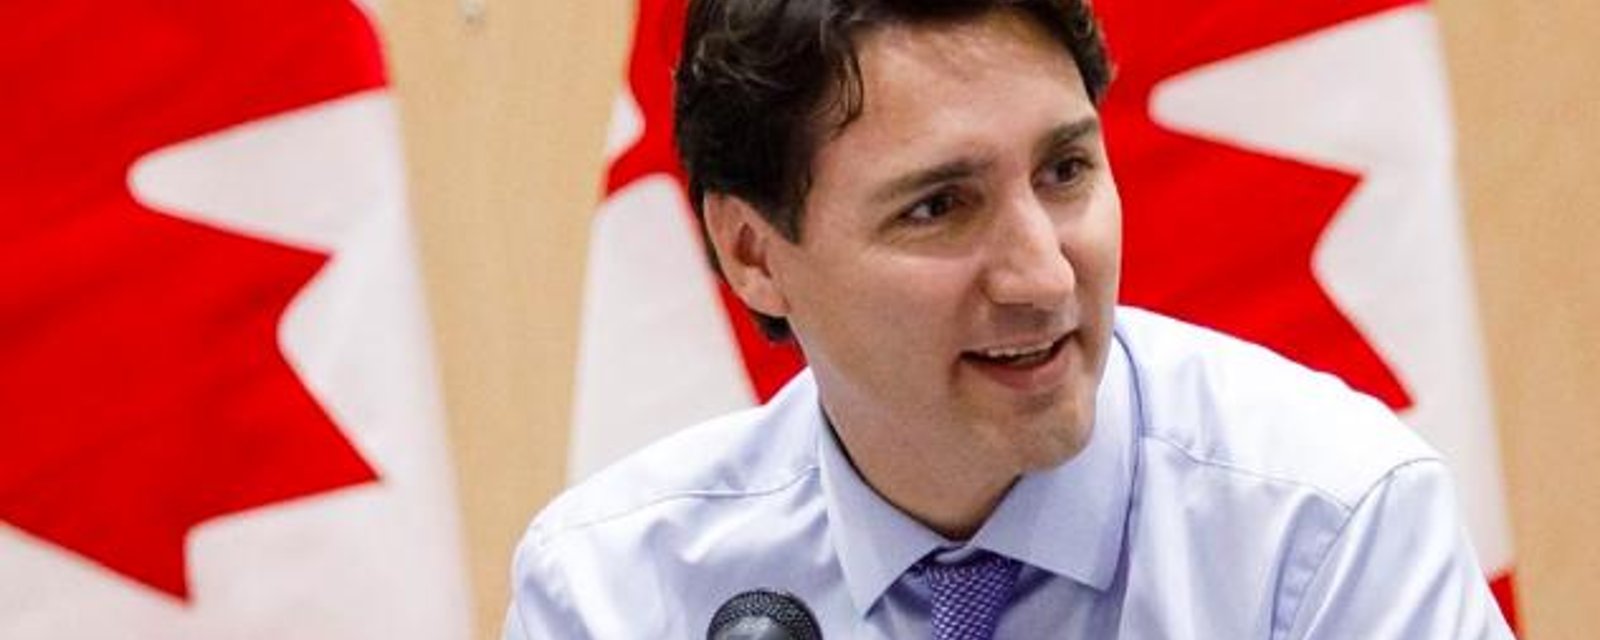 DERNIÈRE HEURE: Andrew Scheer demande la démission de Justin Trudeau après les révélations faites aujourd'hui